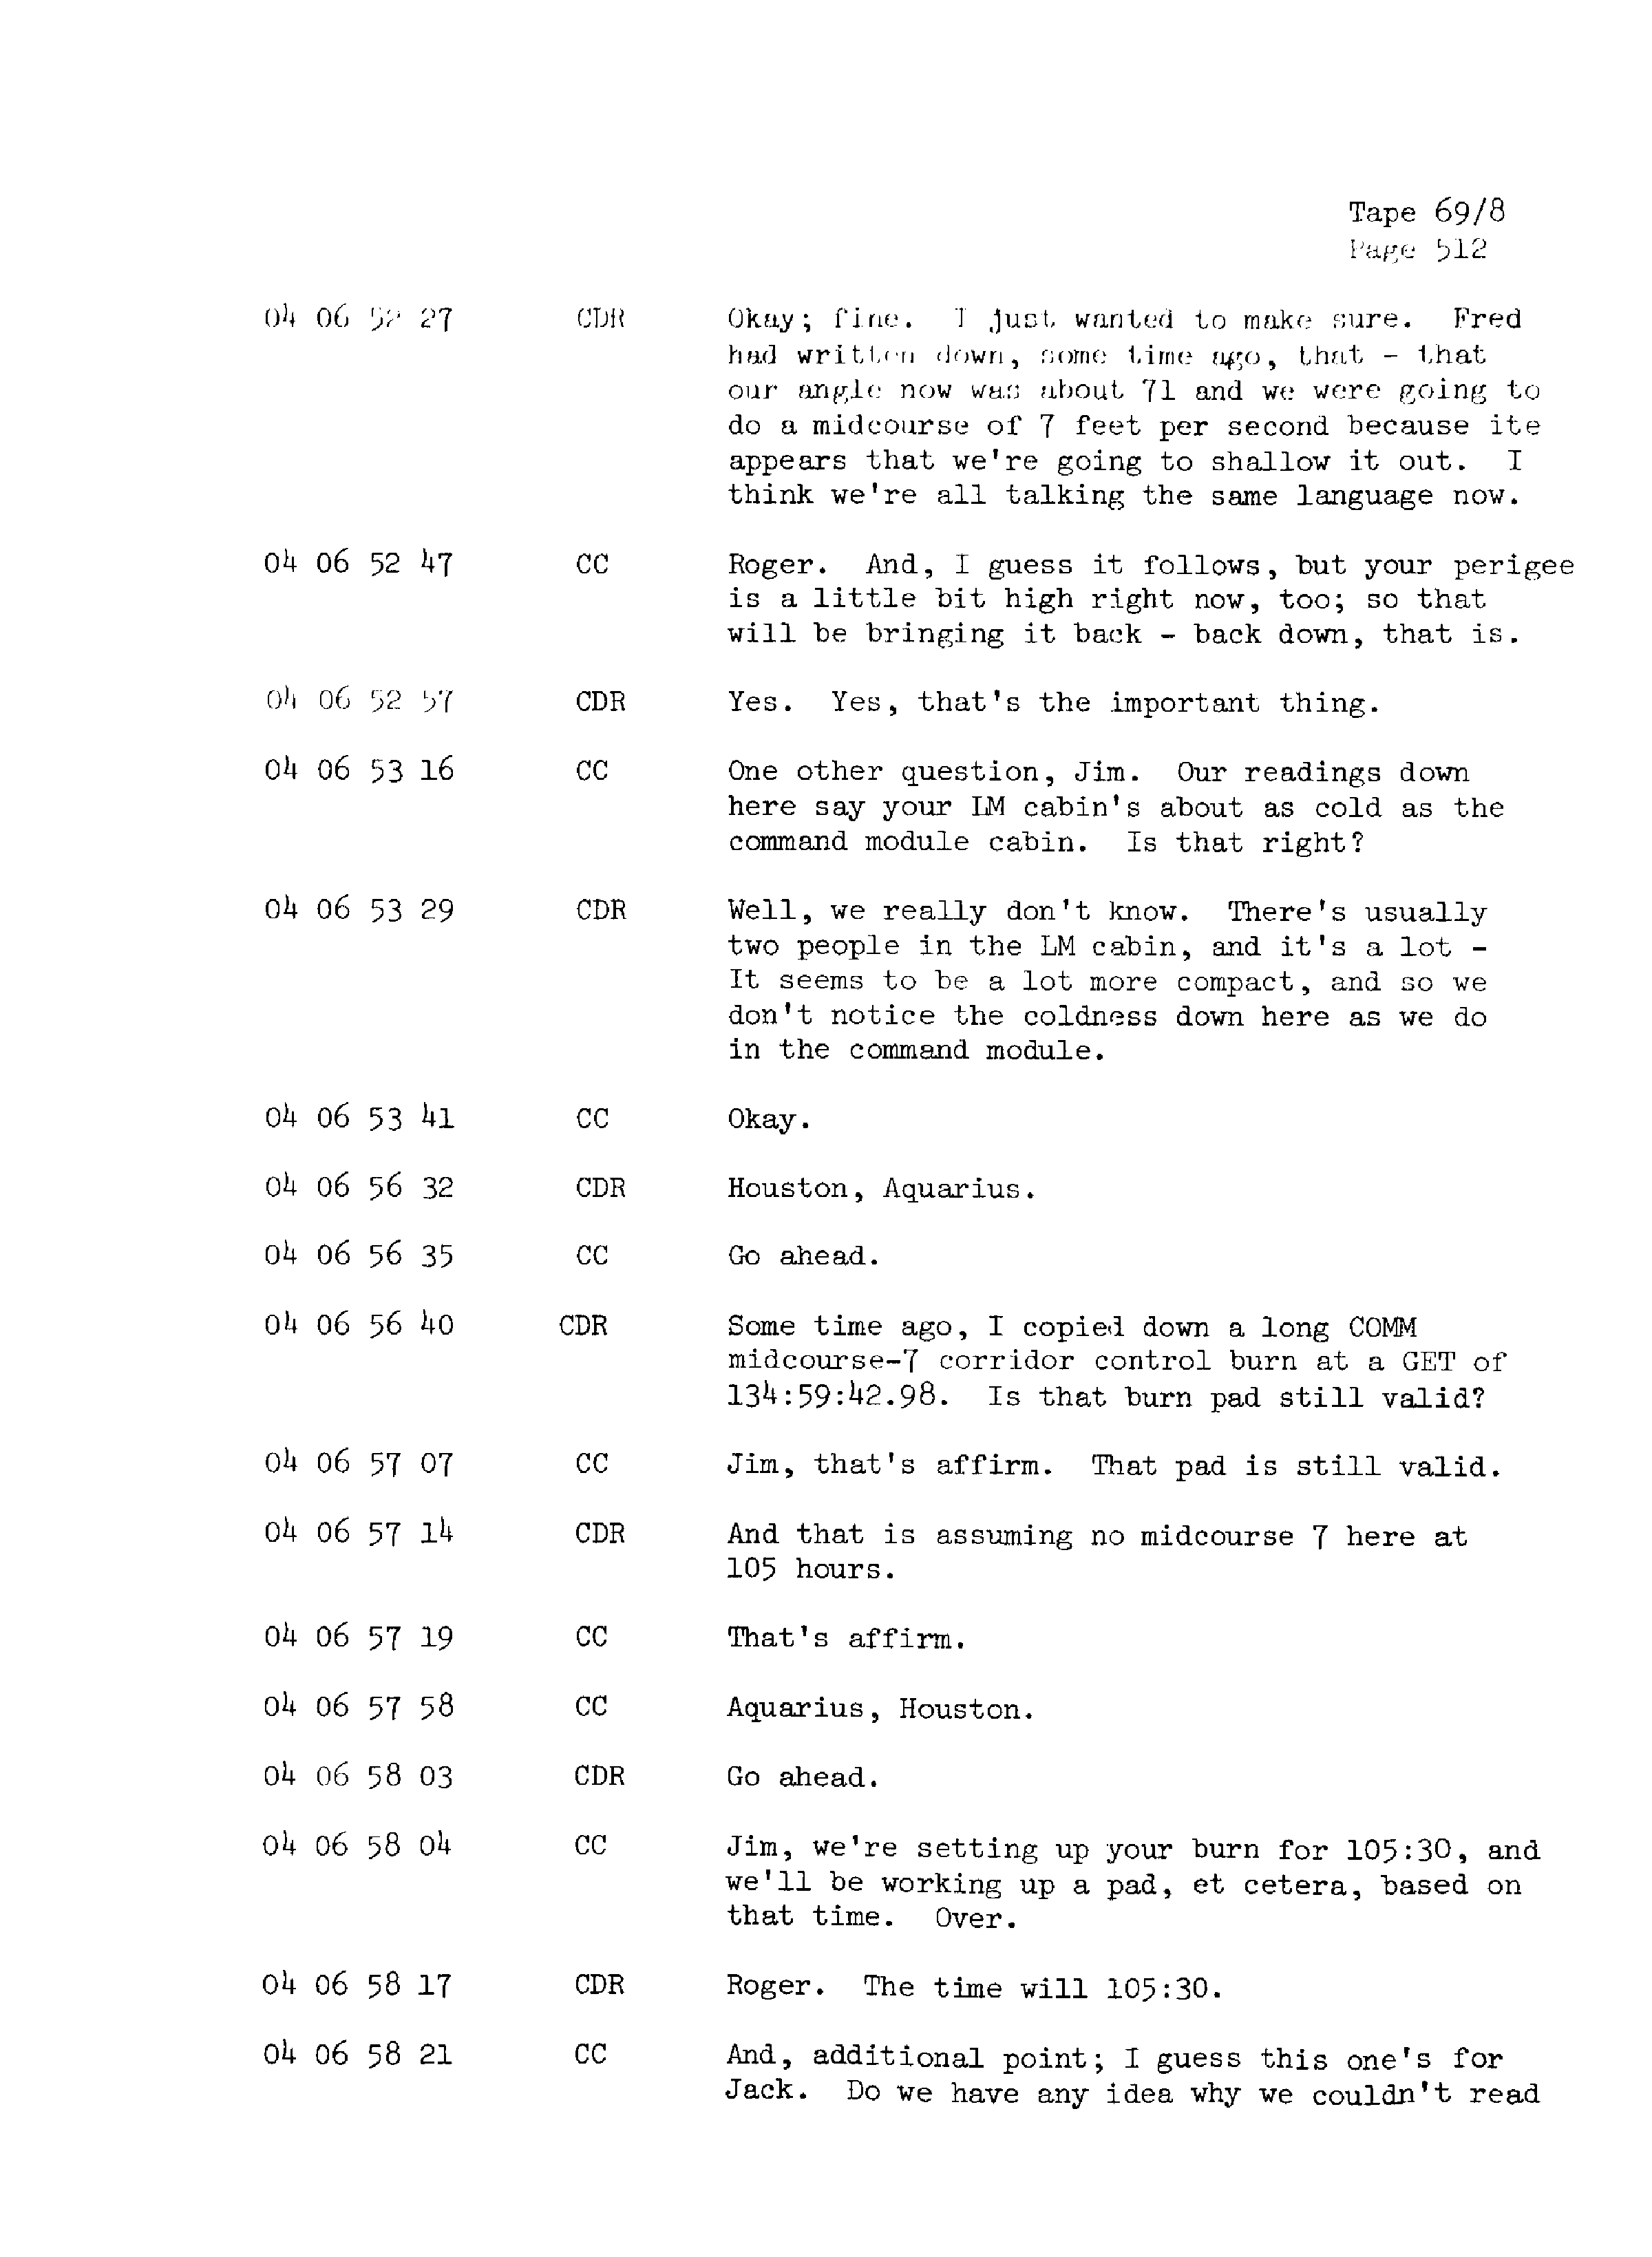 Page 519 of Apollo 13’s original transcript